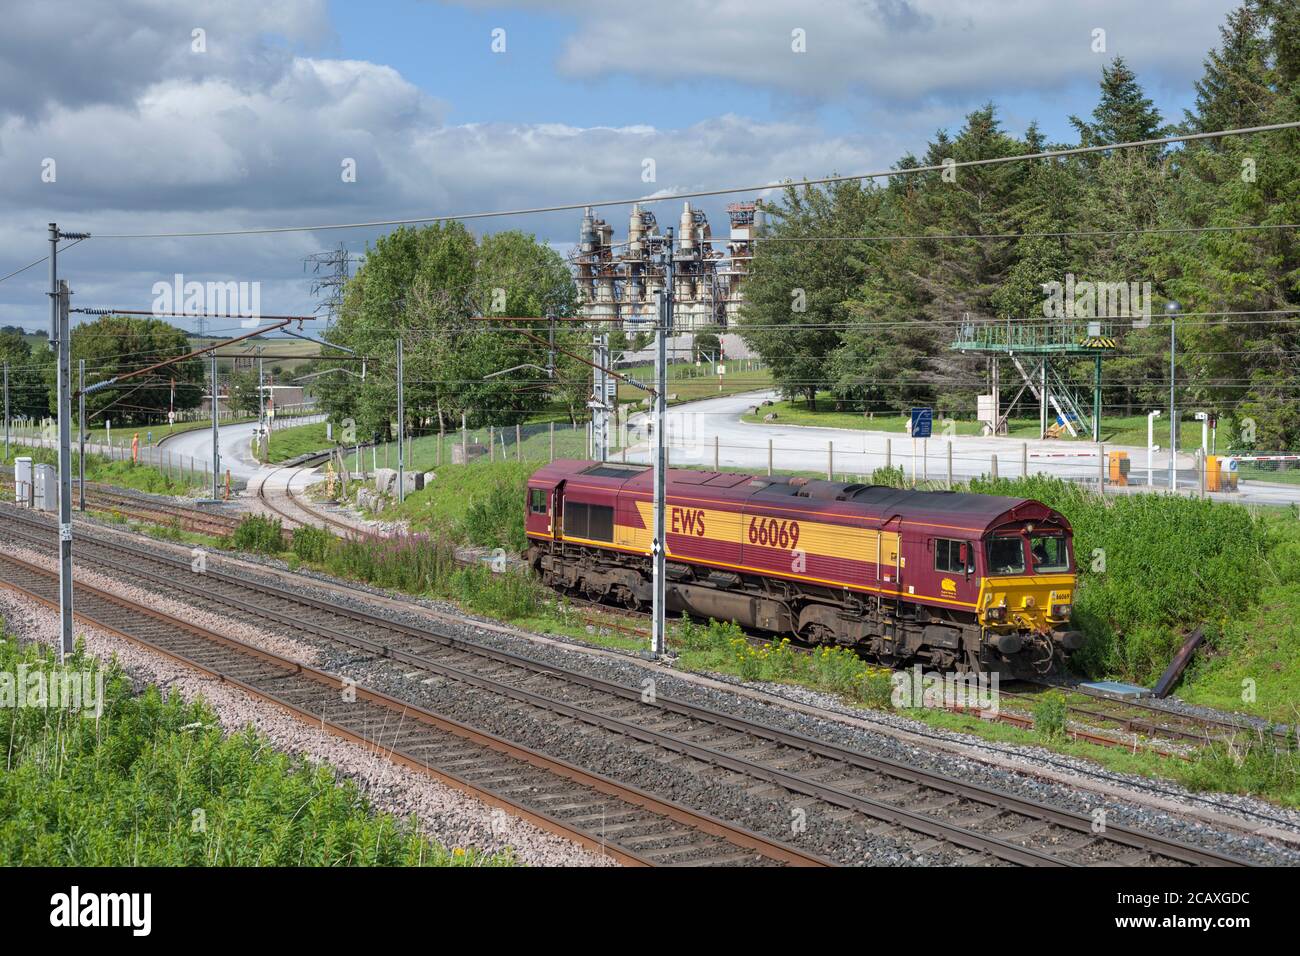 DB cargo classe 66 locomotiva 66069 in livrea inglese gallese e scozzese a Hardendale sulla linea principale della costa occidentale di Cumbria. Foto Stock